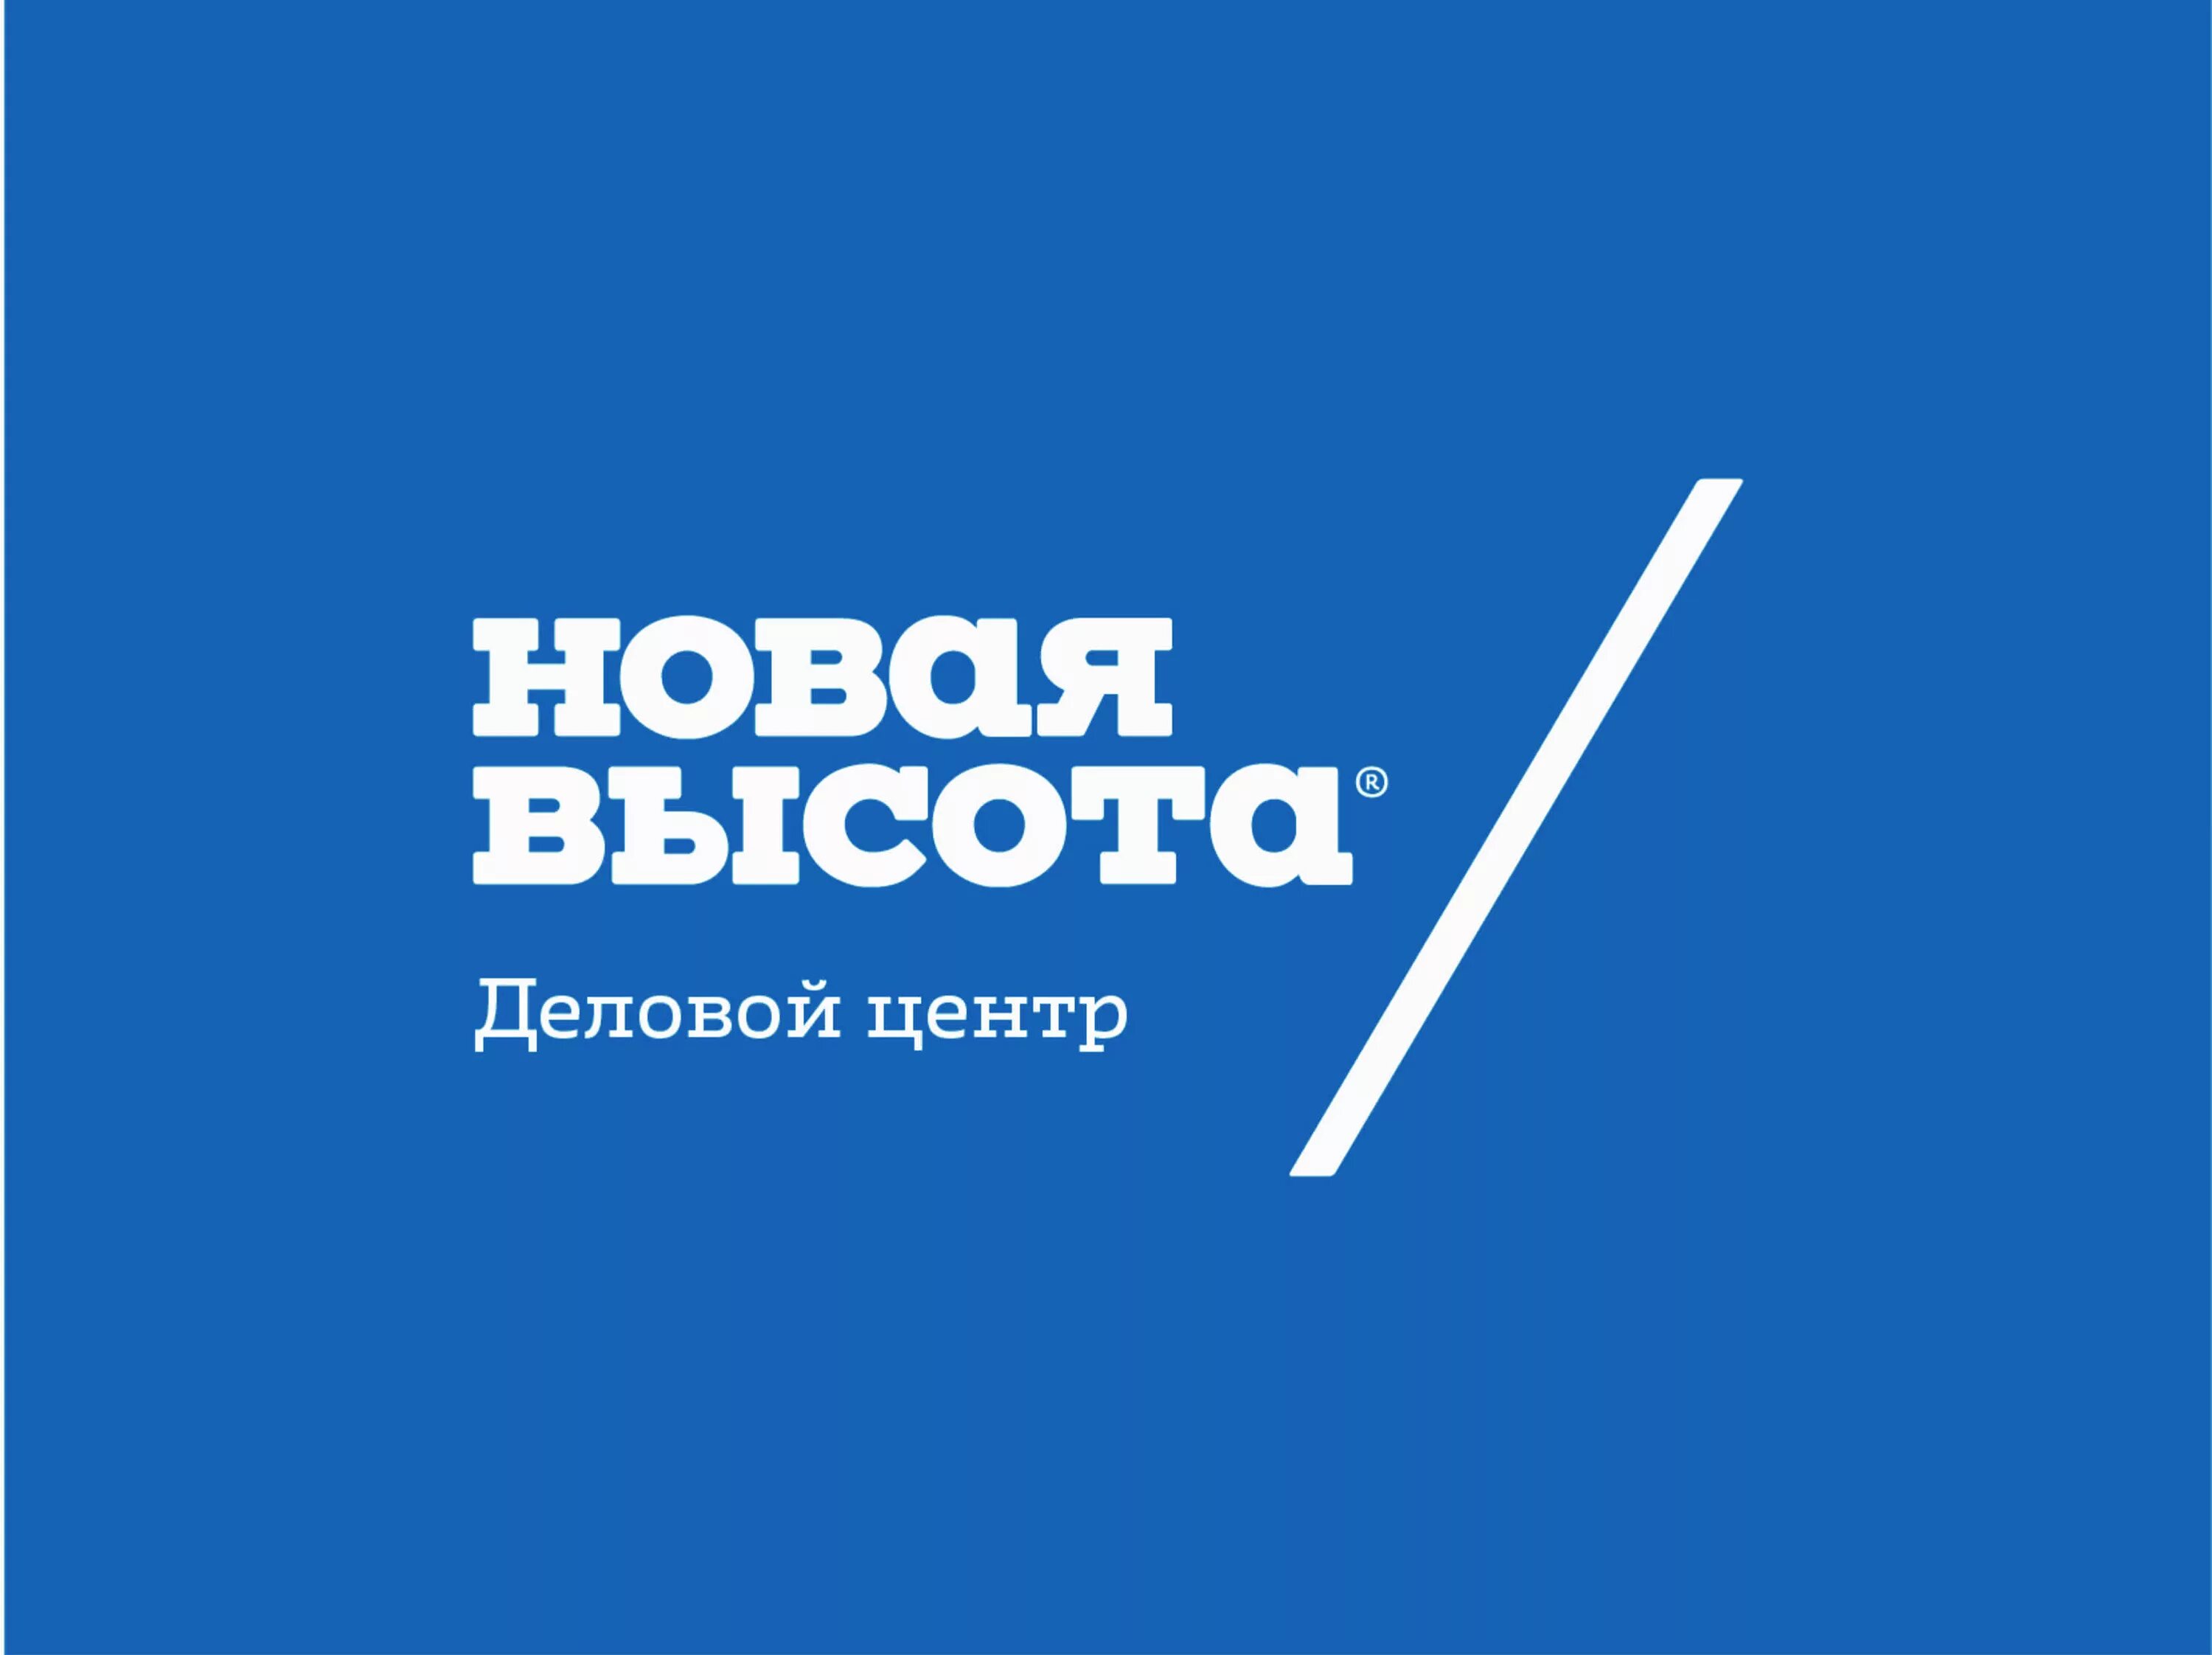 Новая высота. Новая высота Новосибирск. Новая высота логотип новый. БЦ новая высота Новосибирск.